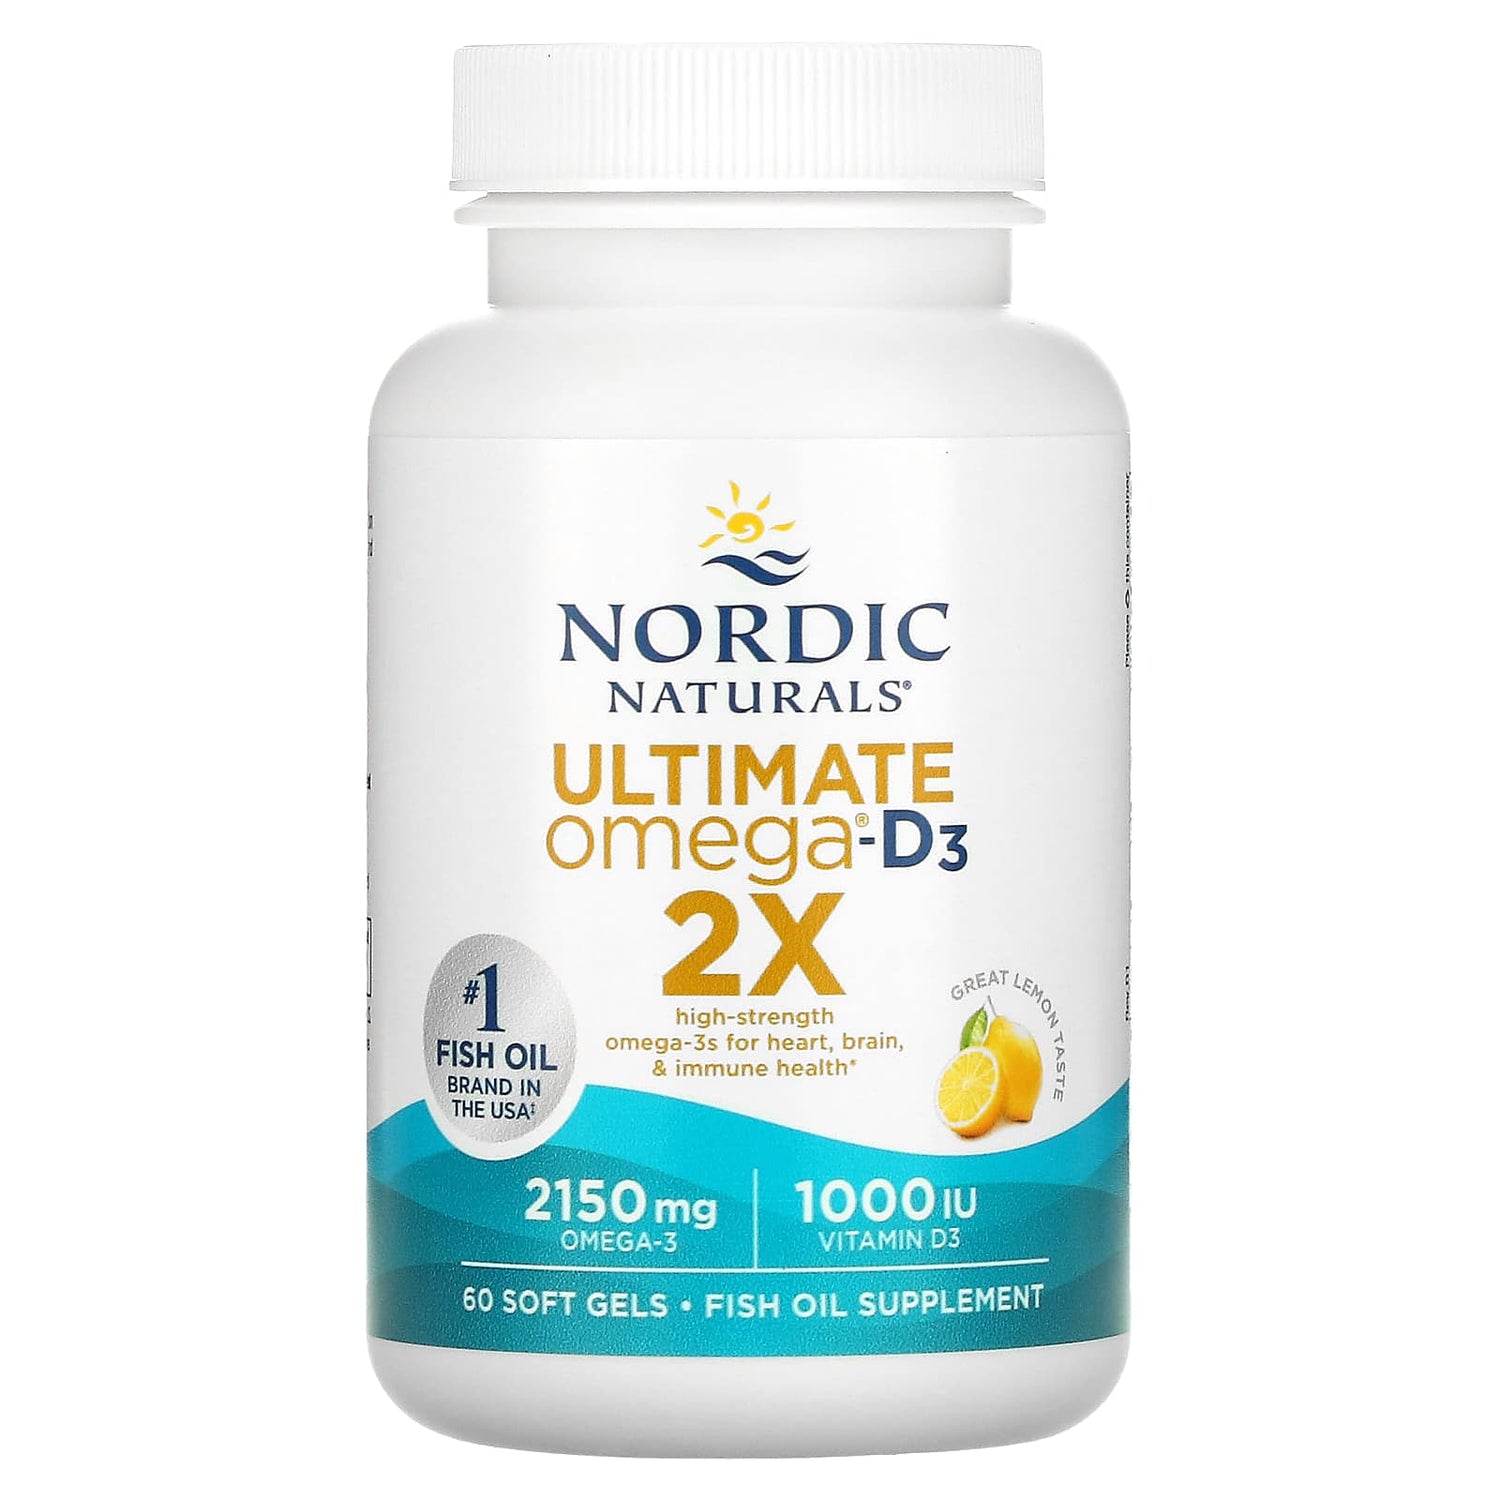 Nordic Naturals Ultimate Omega 2X with Vitamin D3, 2150 mg Omega-3 + 1000 IU D3 Lemon Flavor - 60 Softgels